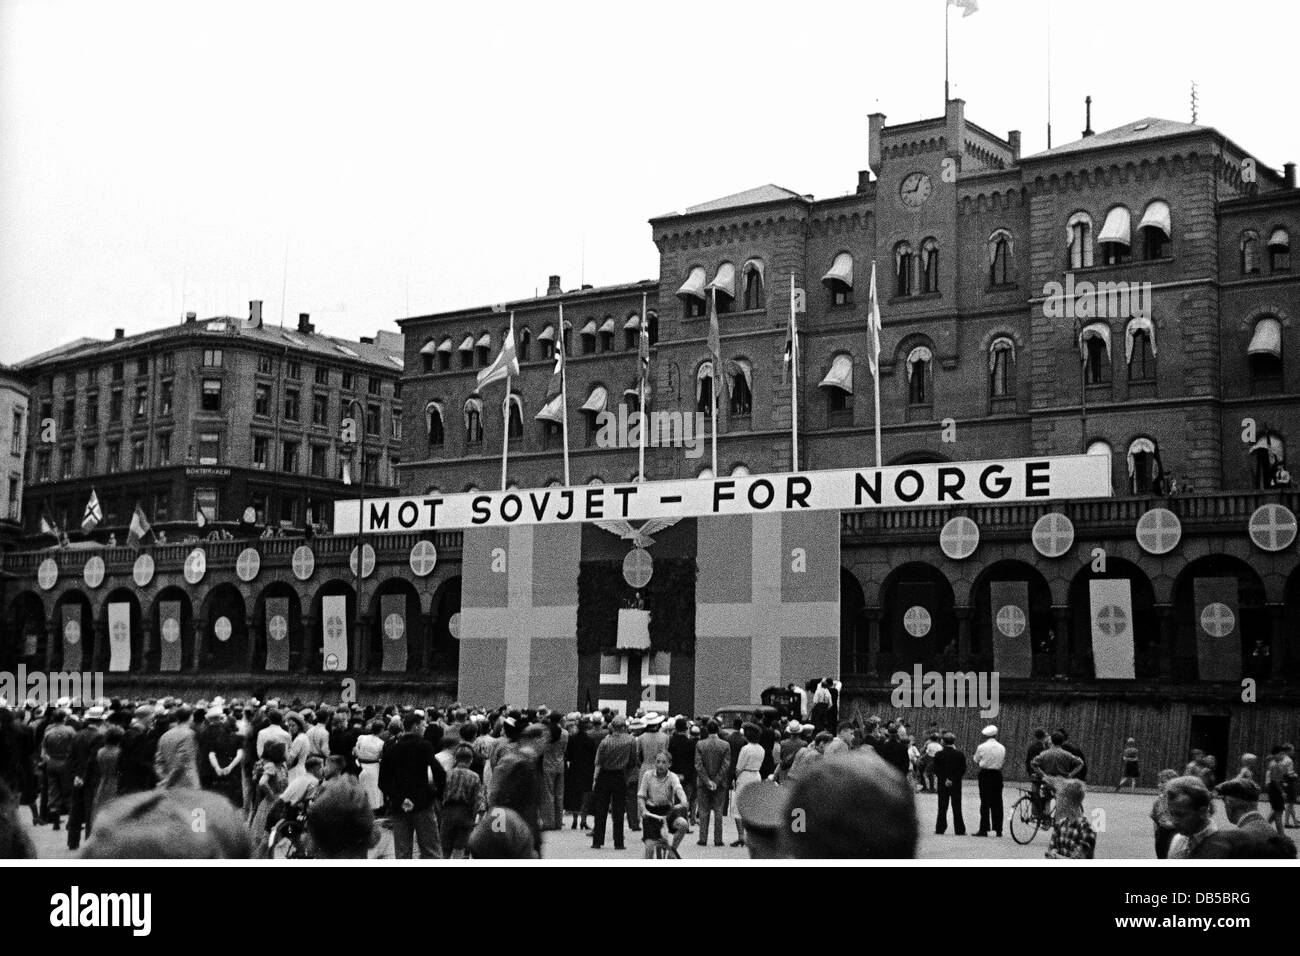 Ereignisse, Zweiter Weltkrieg, Norwegen, deutsche Besatzung, antisowjetische Kundgebung, Banner 'Möve Sovjet - für Norge' (gegen die Sowjetunion - für Norwegen), um 1942, zusätzliche-Rechte-Clearences-nicht verfügbar Stockfoto